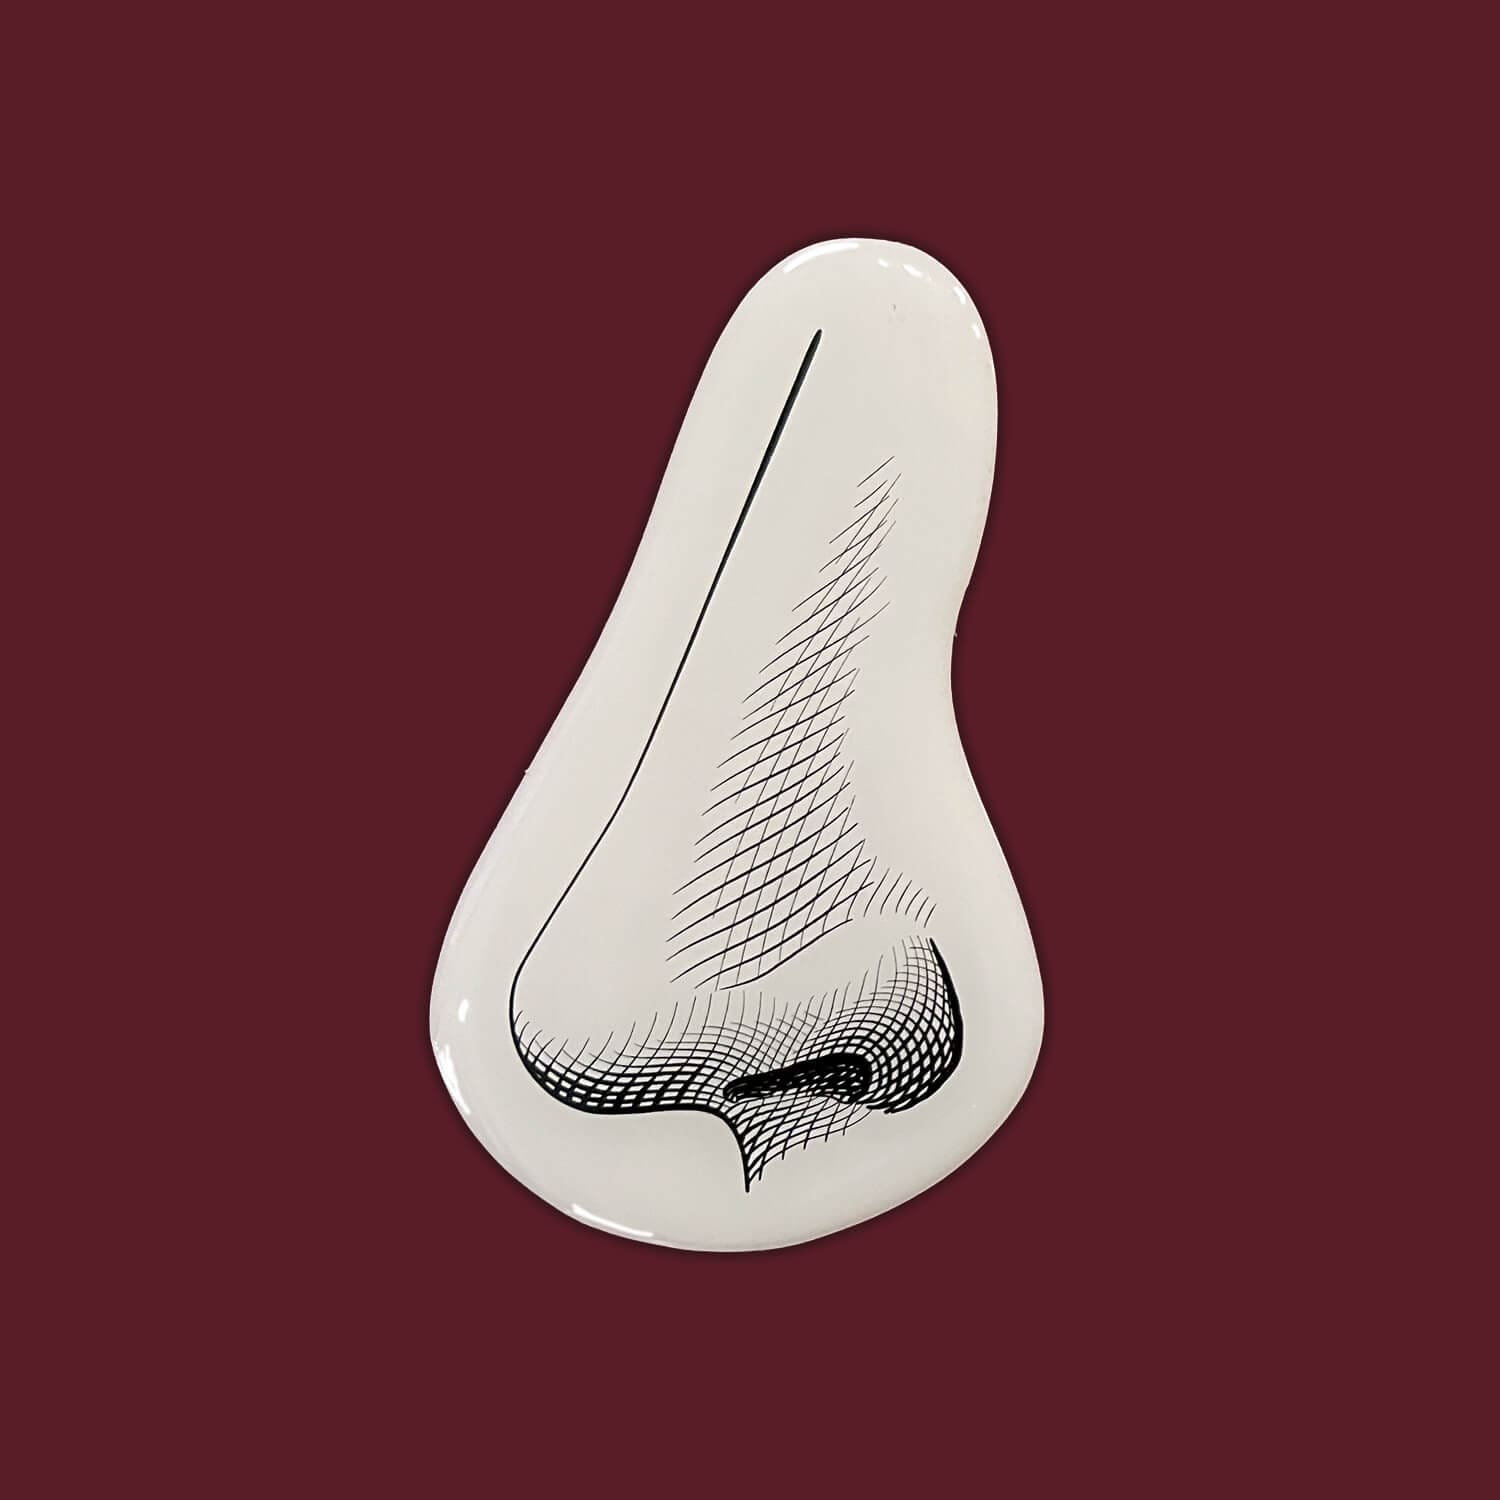 le nez illustré façon gravure pour la cite du vin de bordeaux, design ichetkar